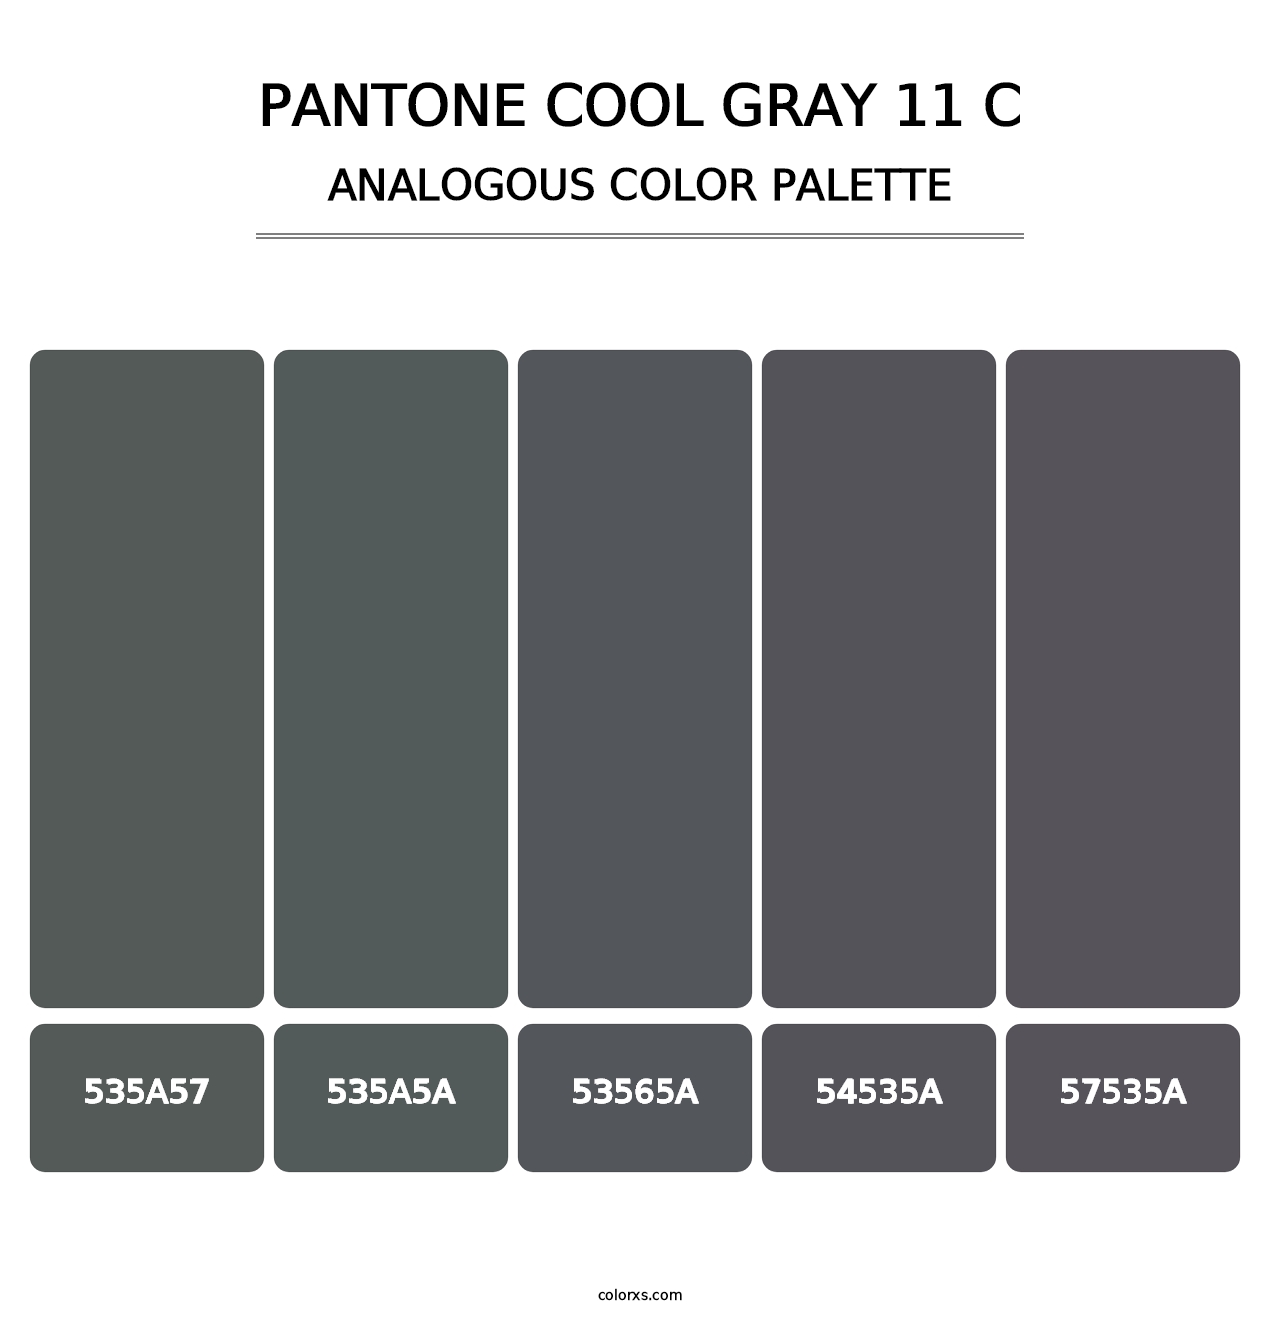 PANTONE Cool Gray 11 C - Analogous Color Palette